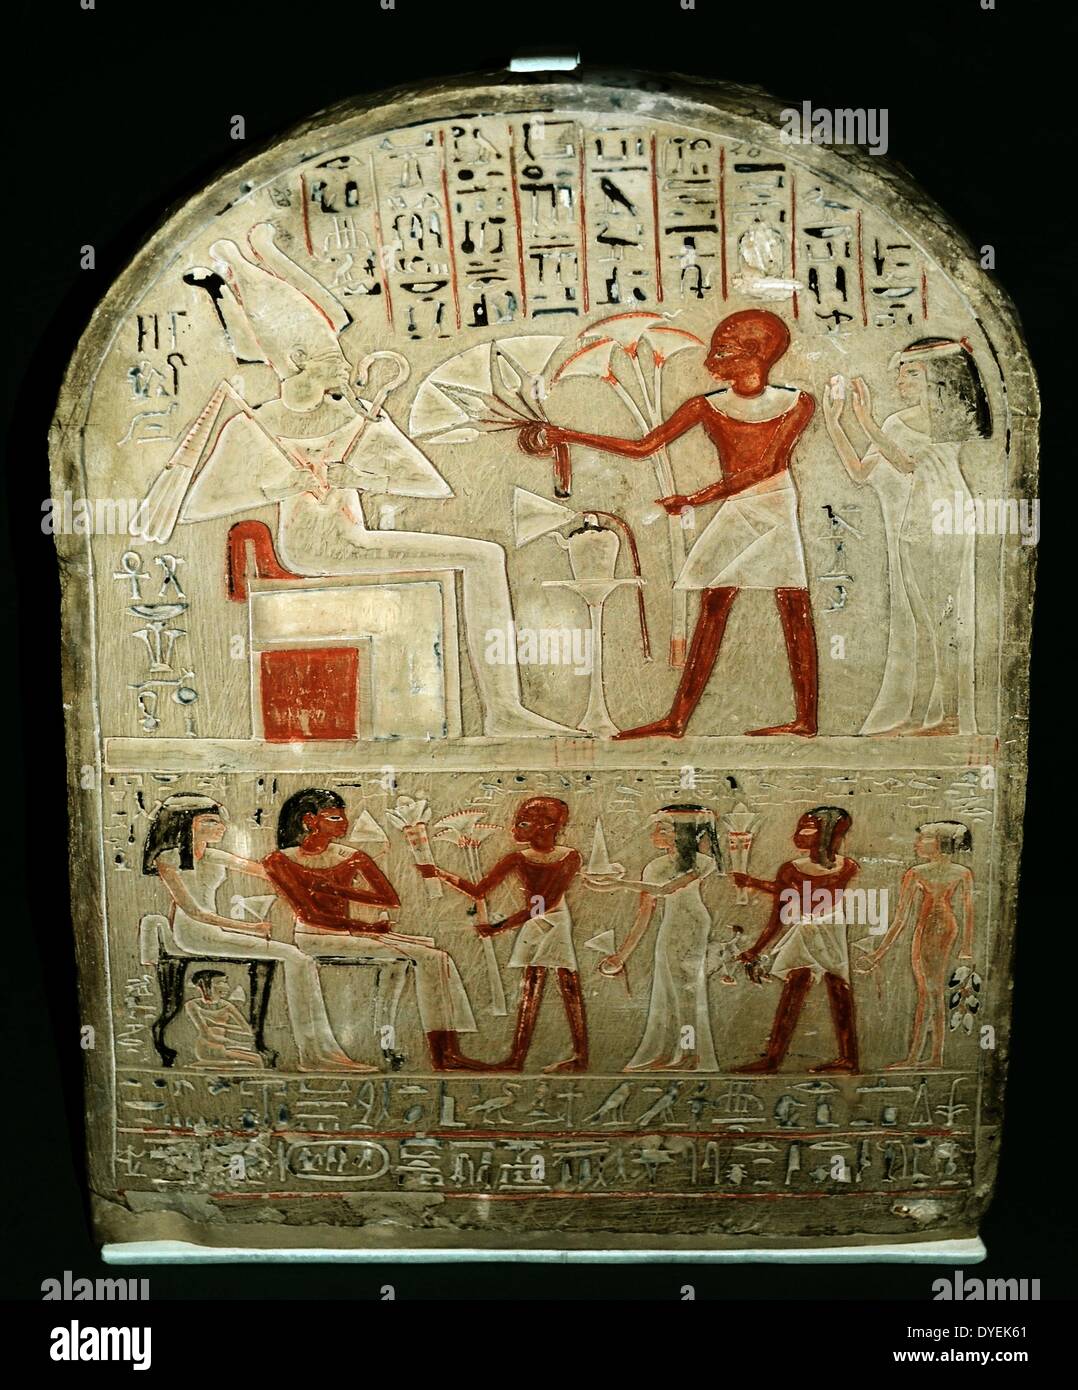 Lackierte Stele aus Kalkstein der Bakkay 1390 v. Chr. im oberen Bereich der Stele zeigt den Verstorbenen mit Blumen zu Osiris. Im unteren Bereich der Stele zeigt Angebote zu ein paar namens Huy und Henutnofret durch vier Mitglieder ihrer Familie. Stockfoto